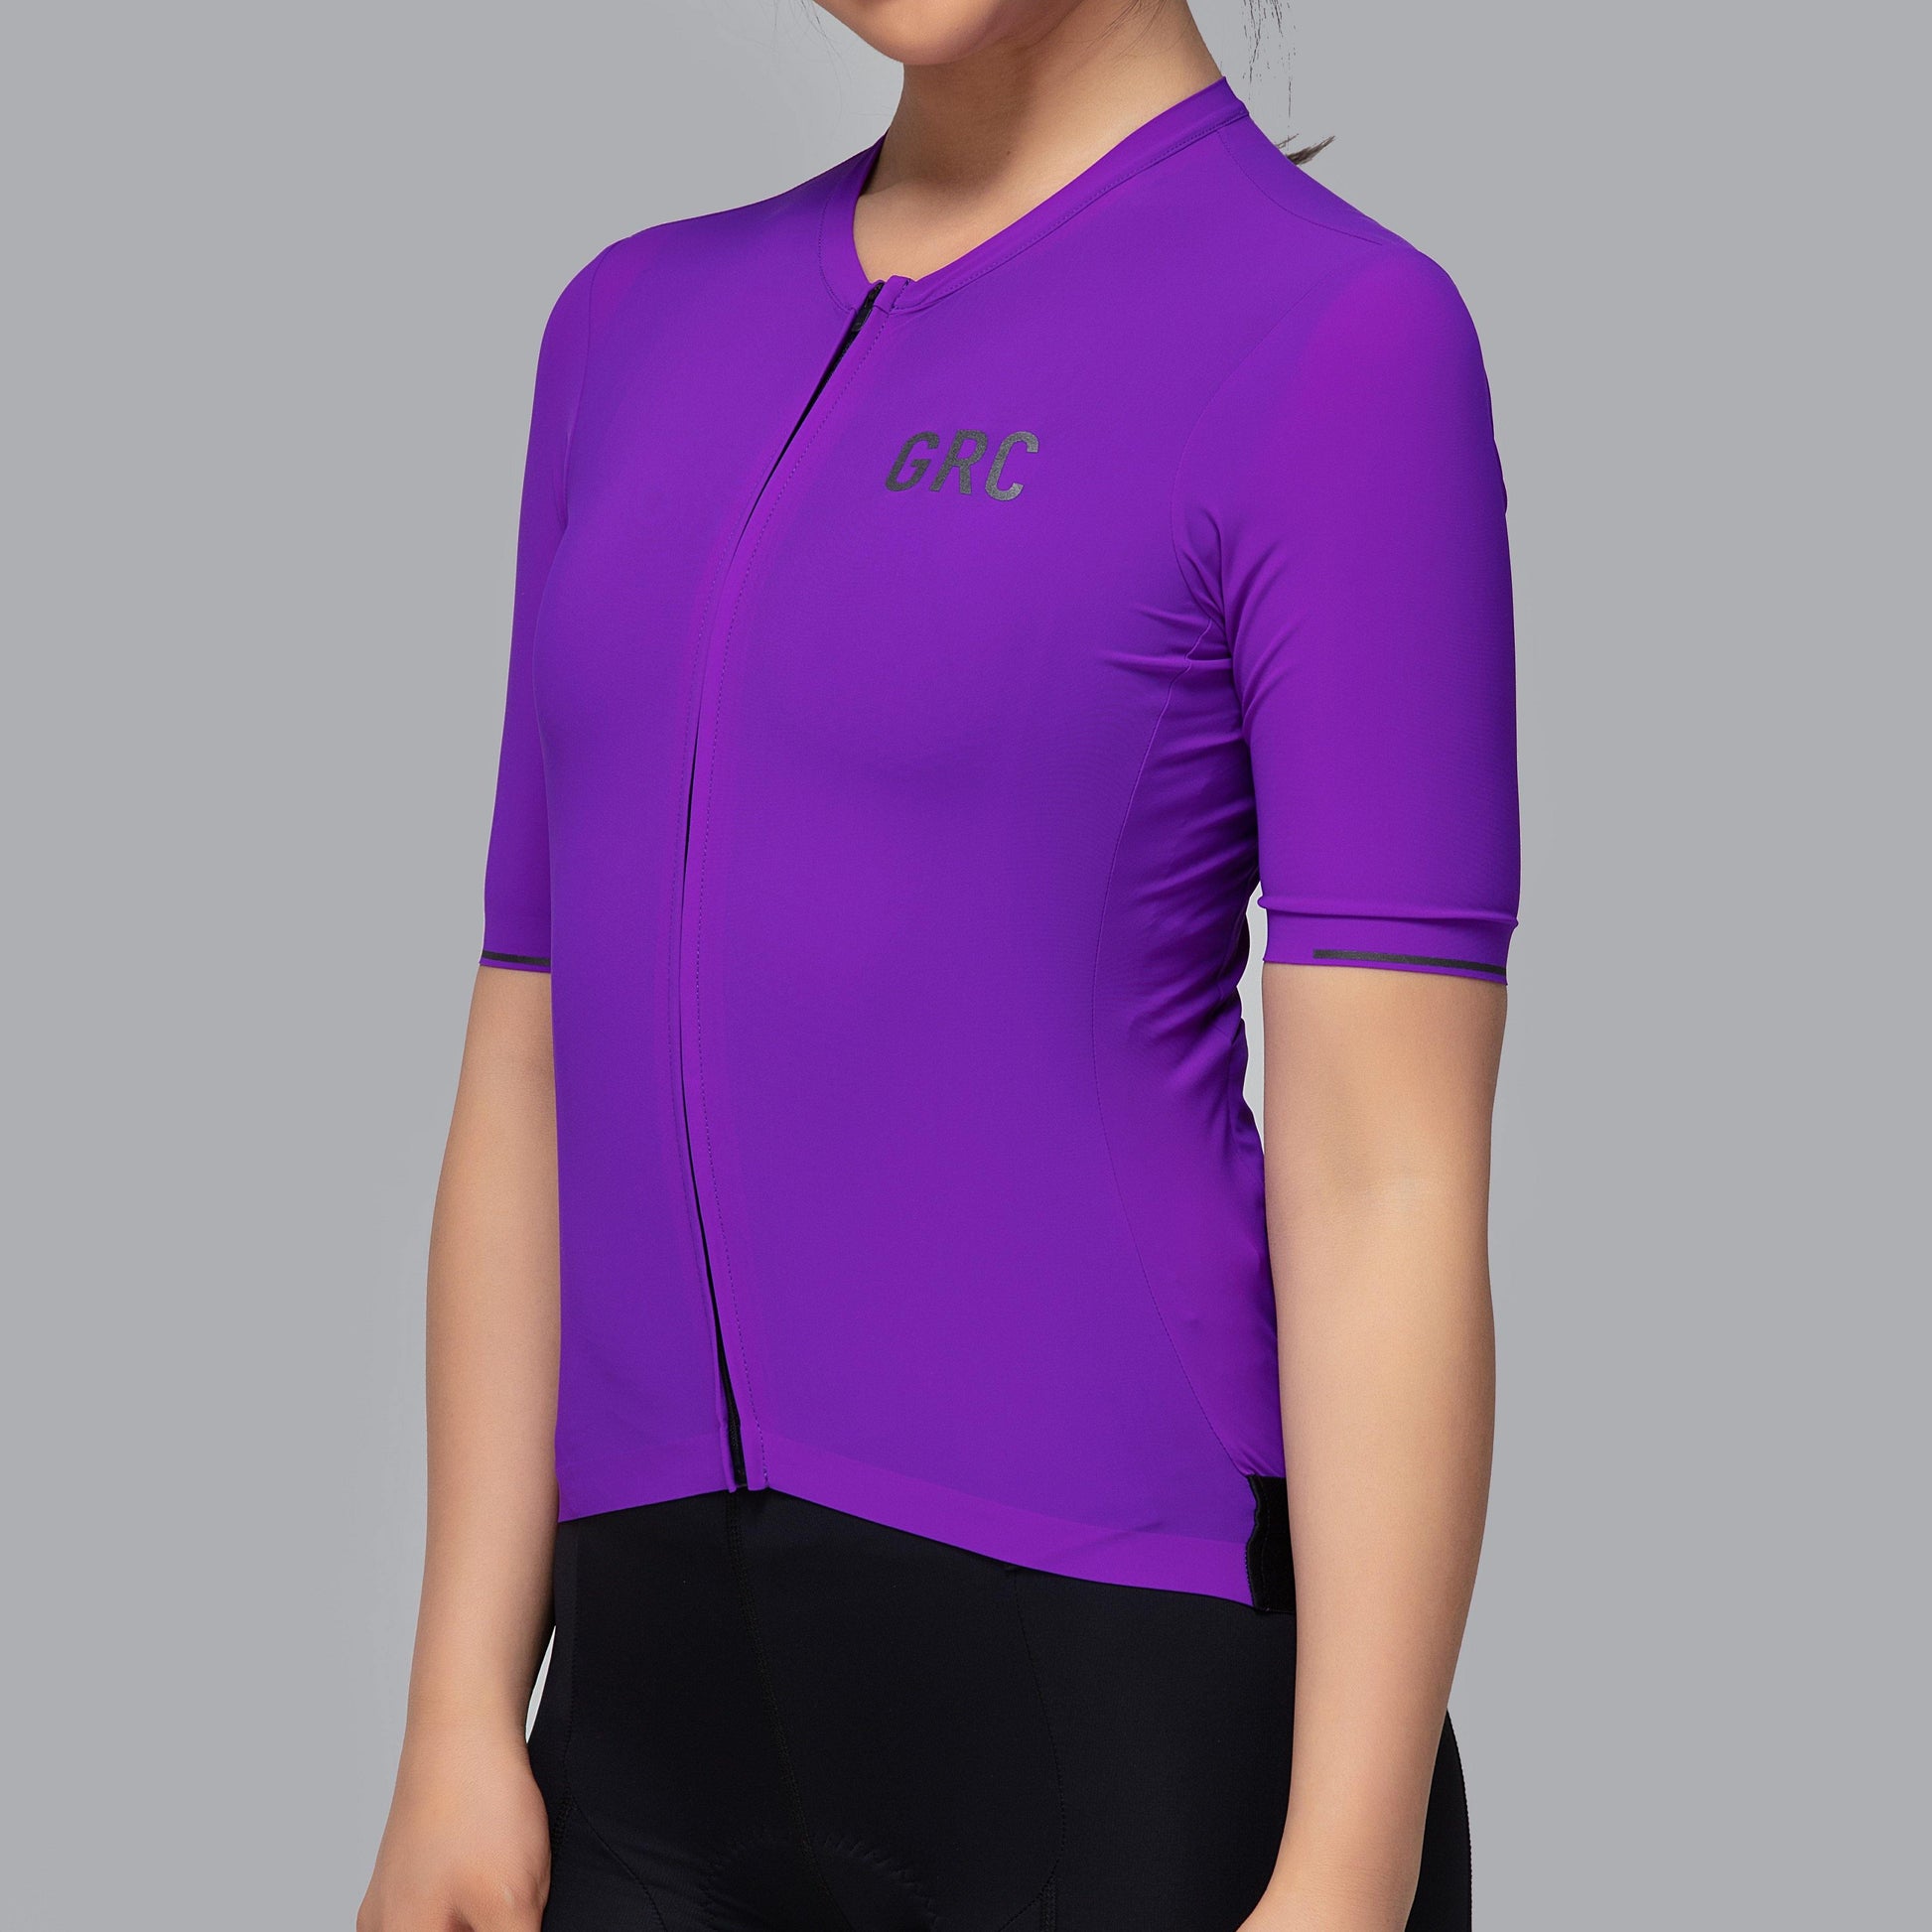 Women's Solid Color Tech Jersey - GRC Unique Cycling Apparel